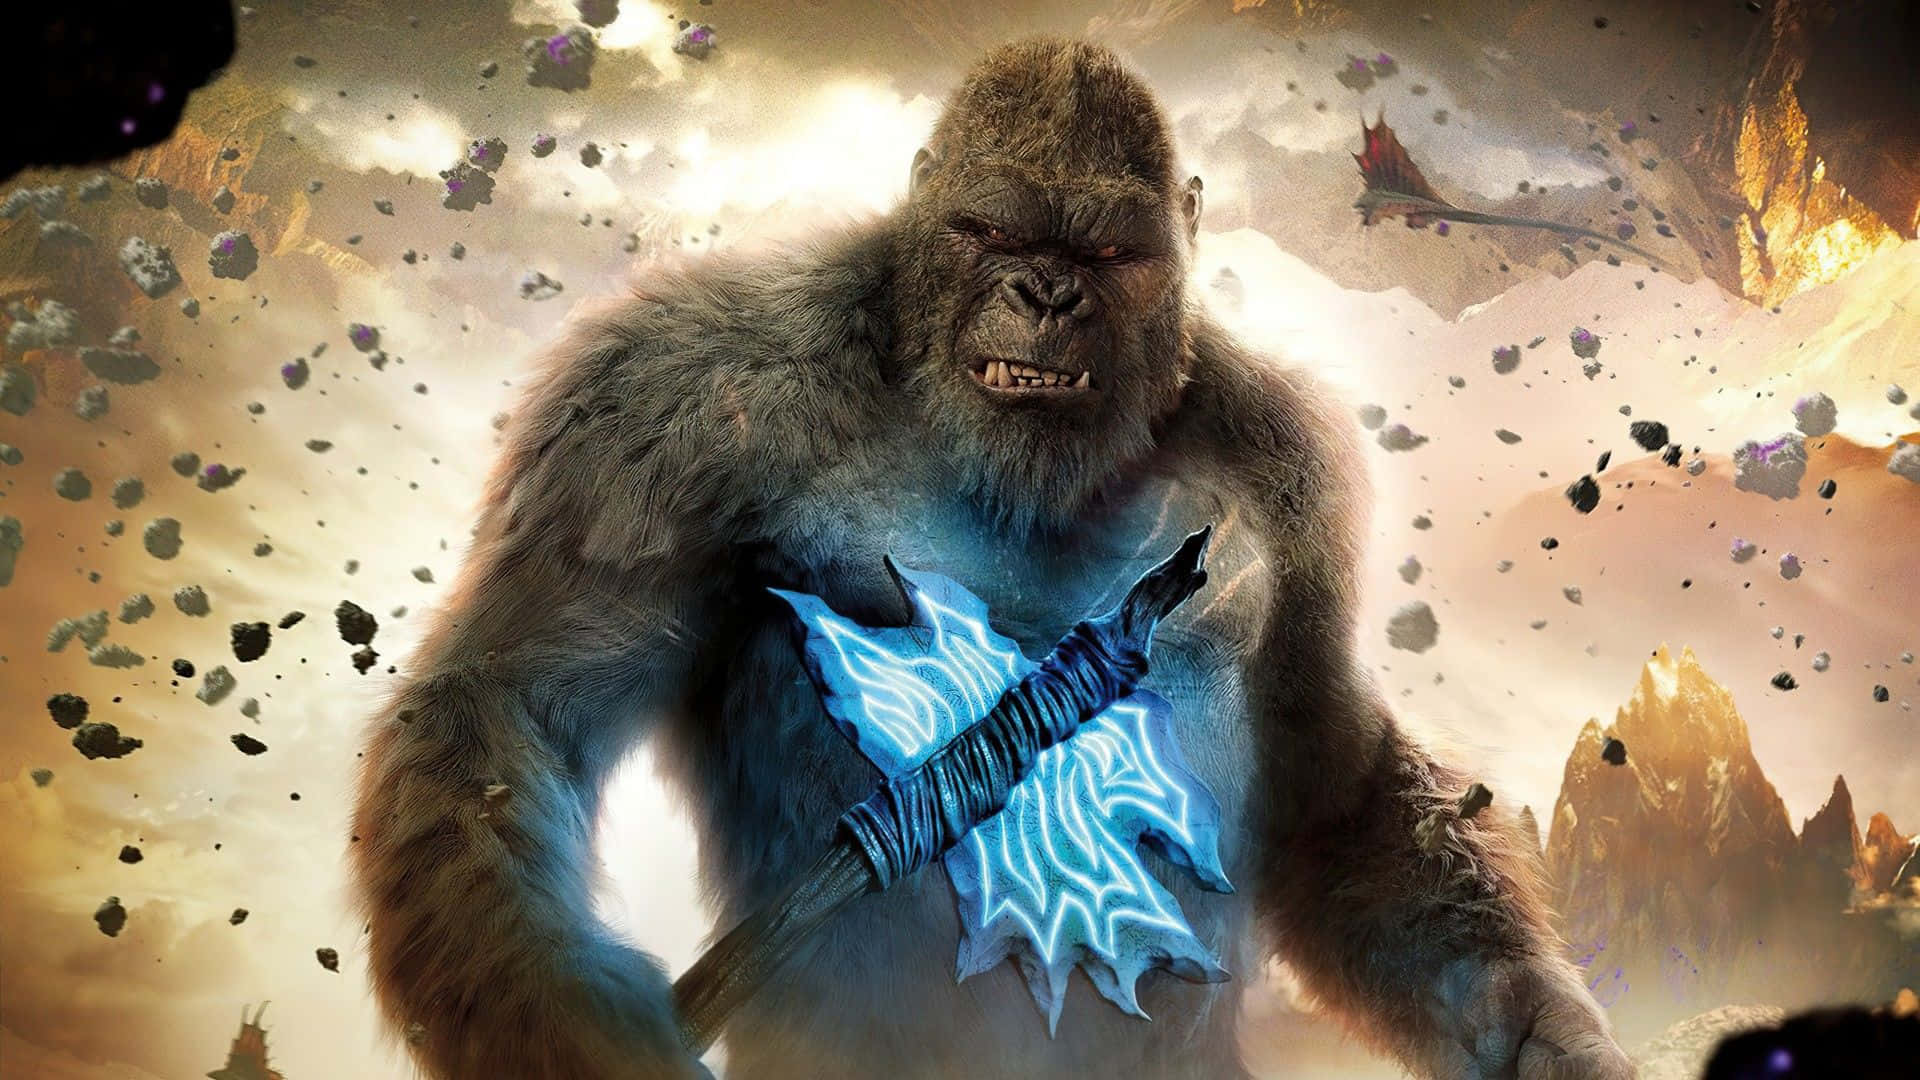 A breathtaking confrontation between Godzilla and Kong